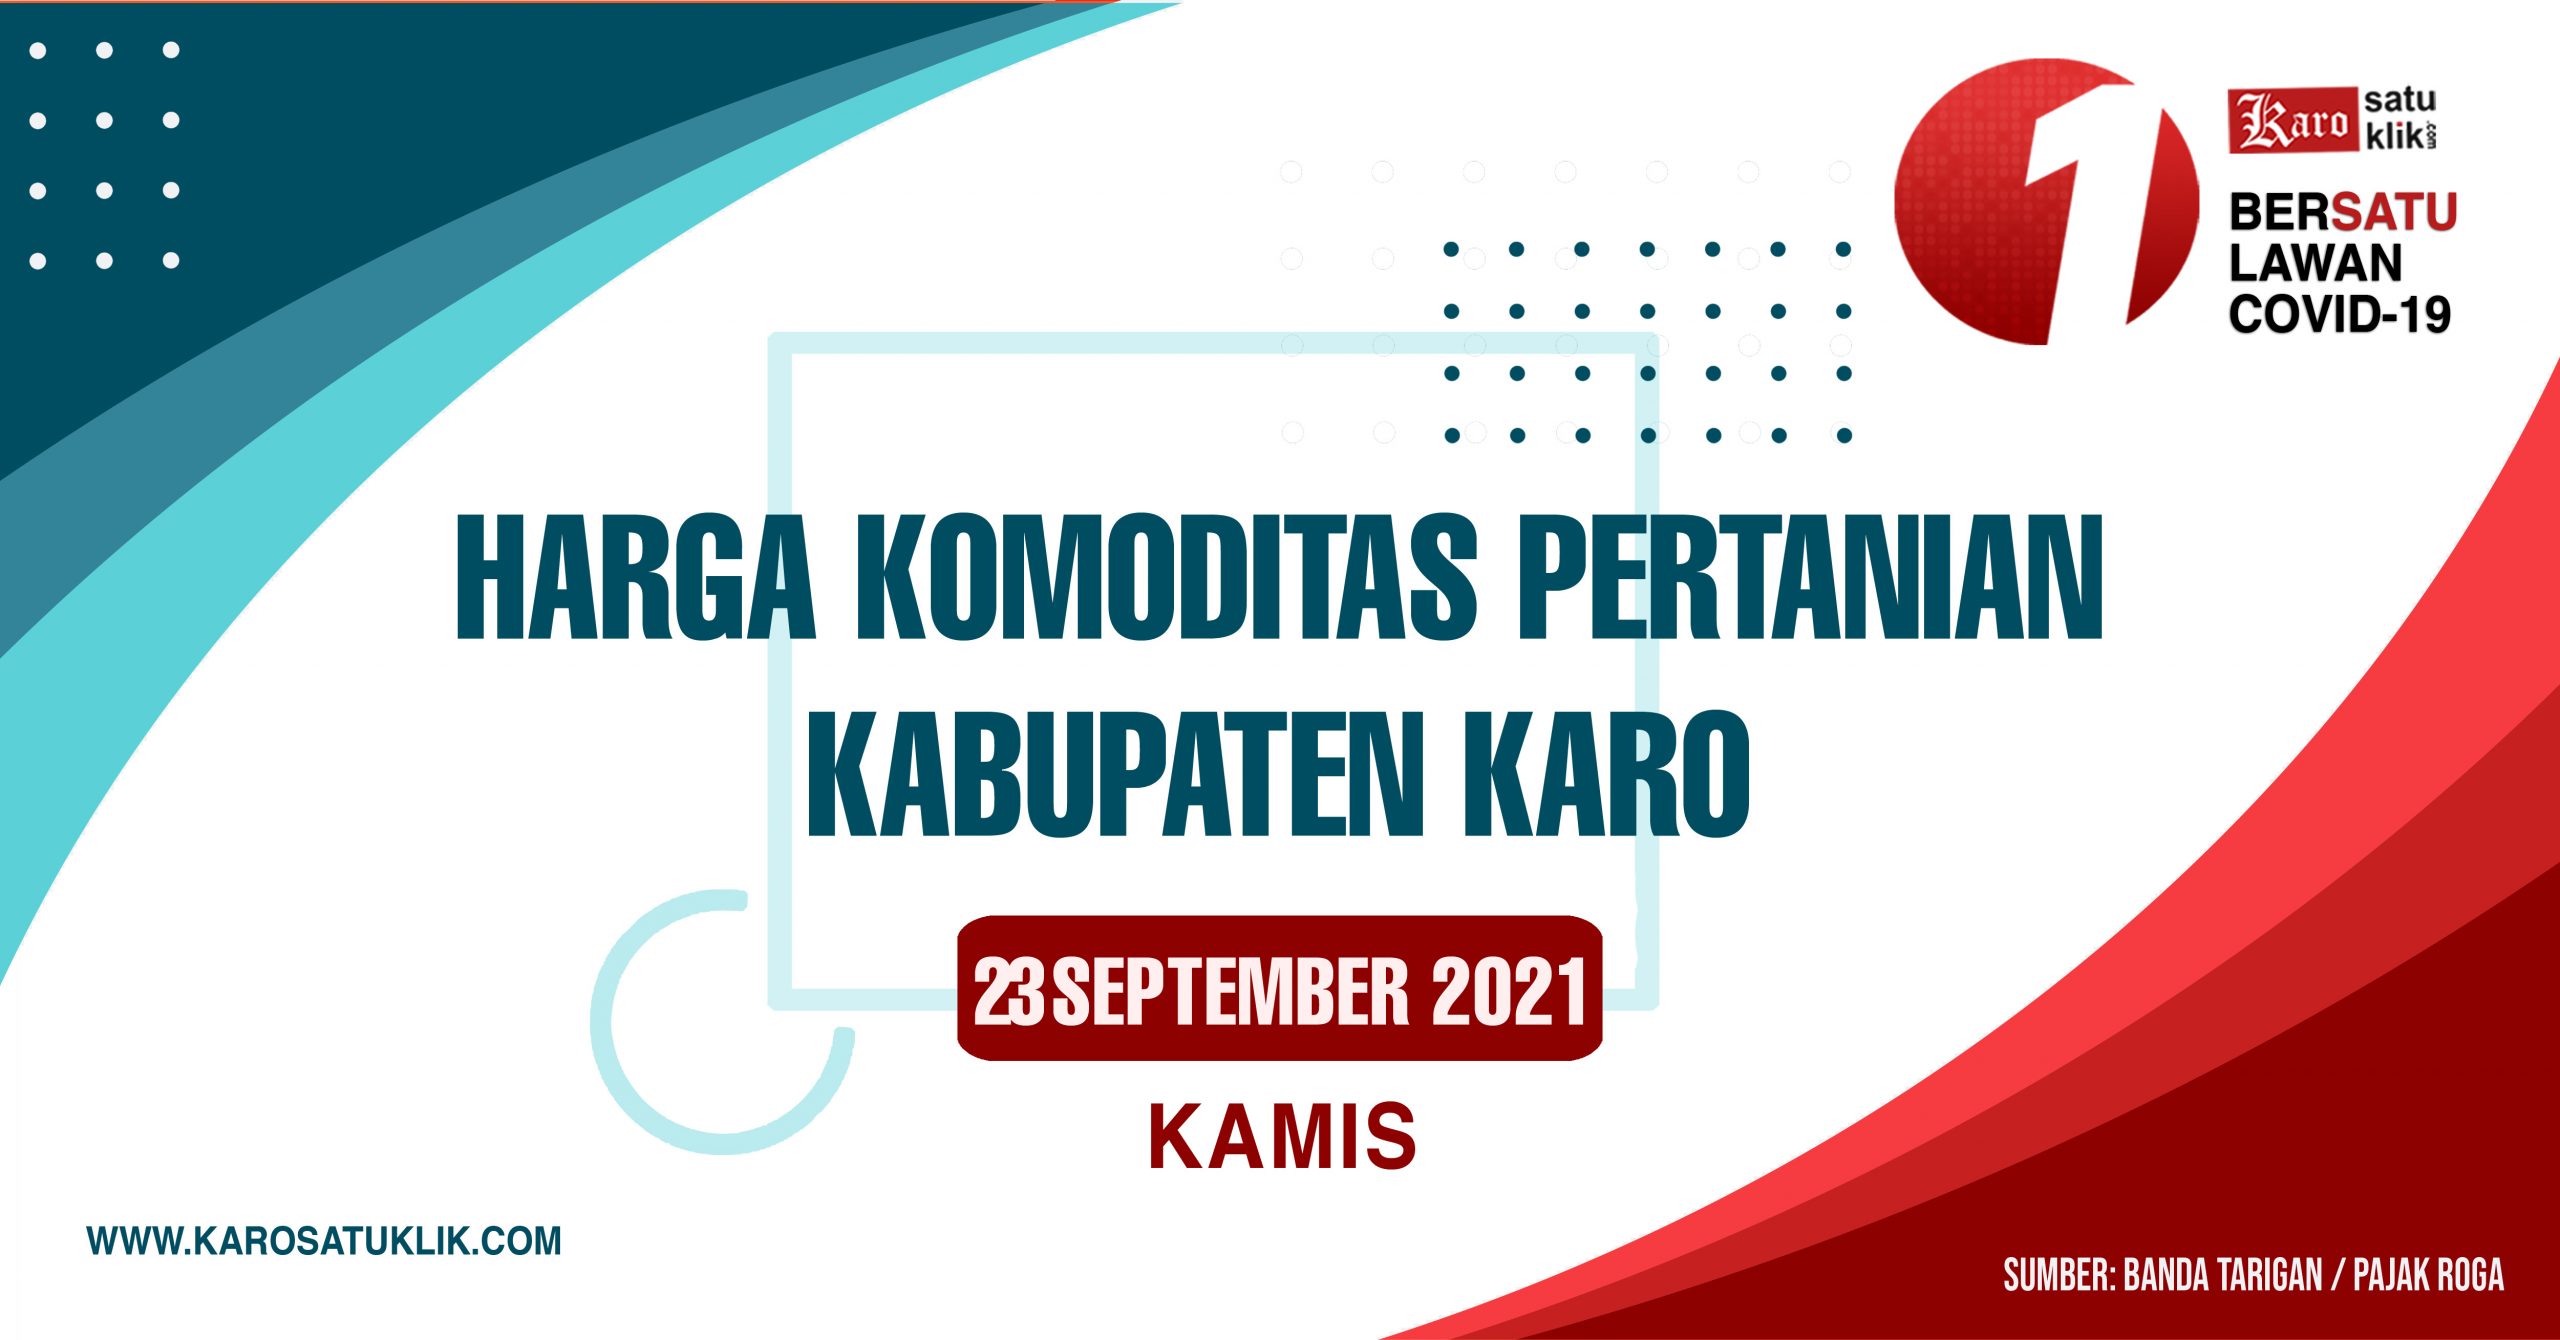 Daftar Harga Komoditas Pertanian Kabupaten Karo, 23 September 2021